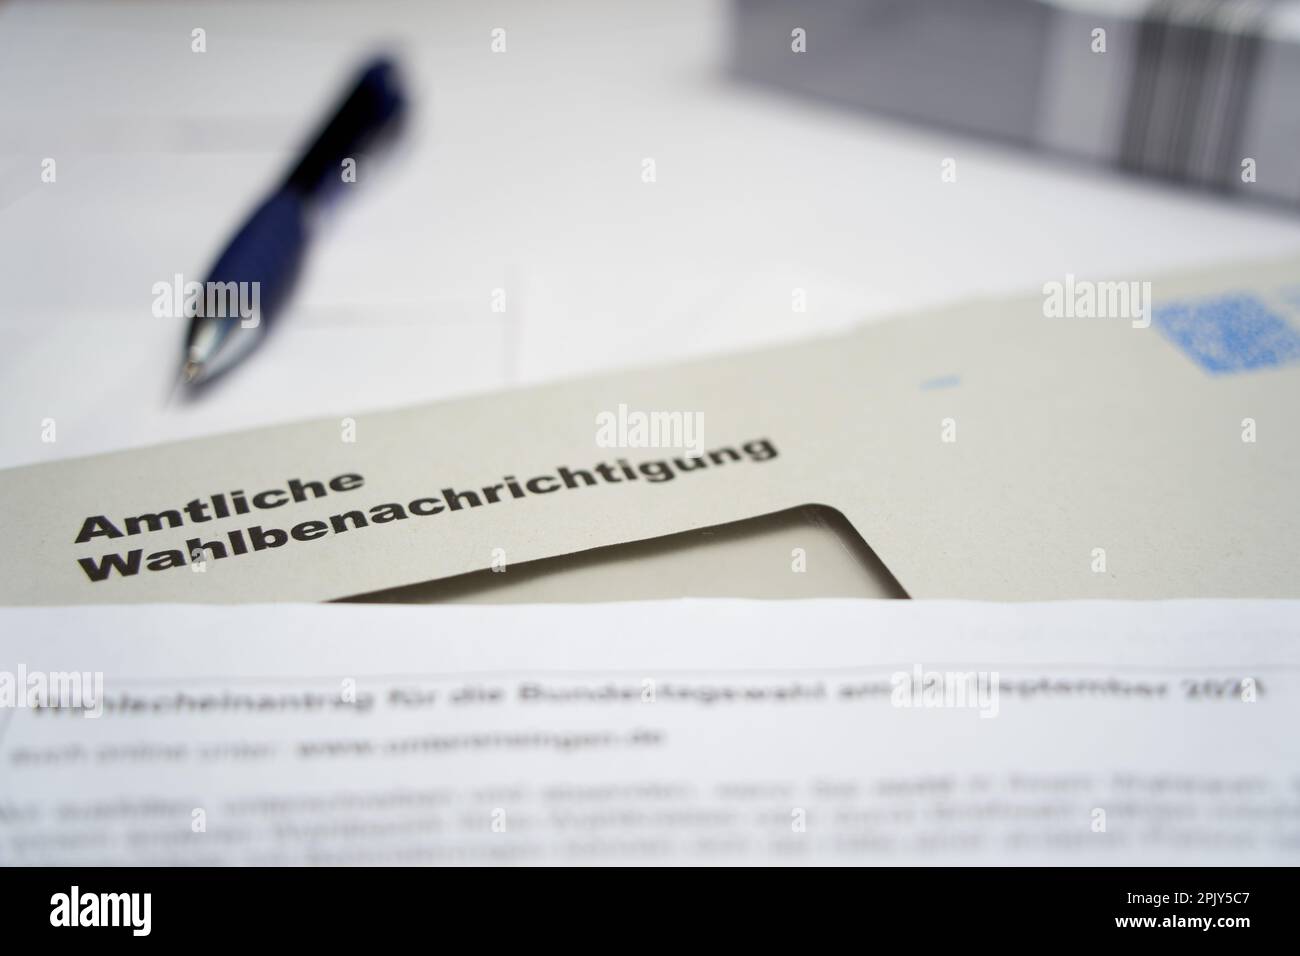 Stuttgart, Allemagne - 28 août 2021: Notification officielle des élections (Wahlbenachrichtigung Bundestag) pour l'élection fédérale en allemagne. Multip Banque D'Images